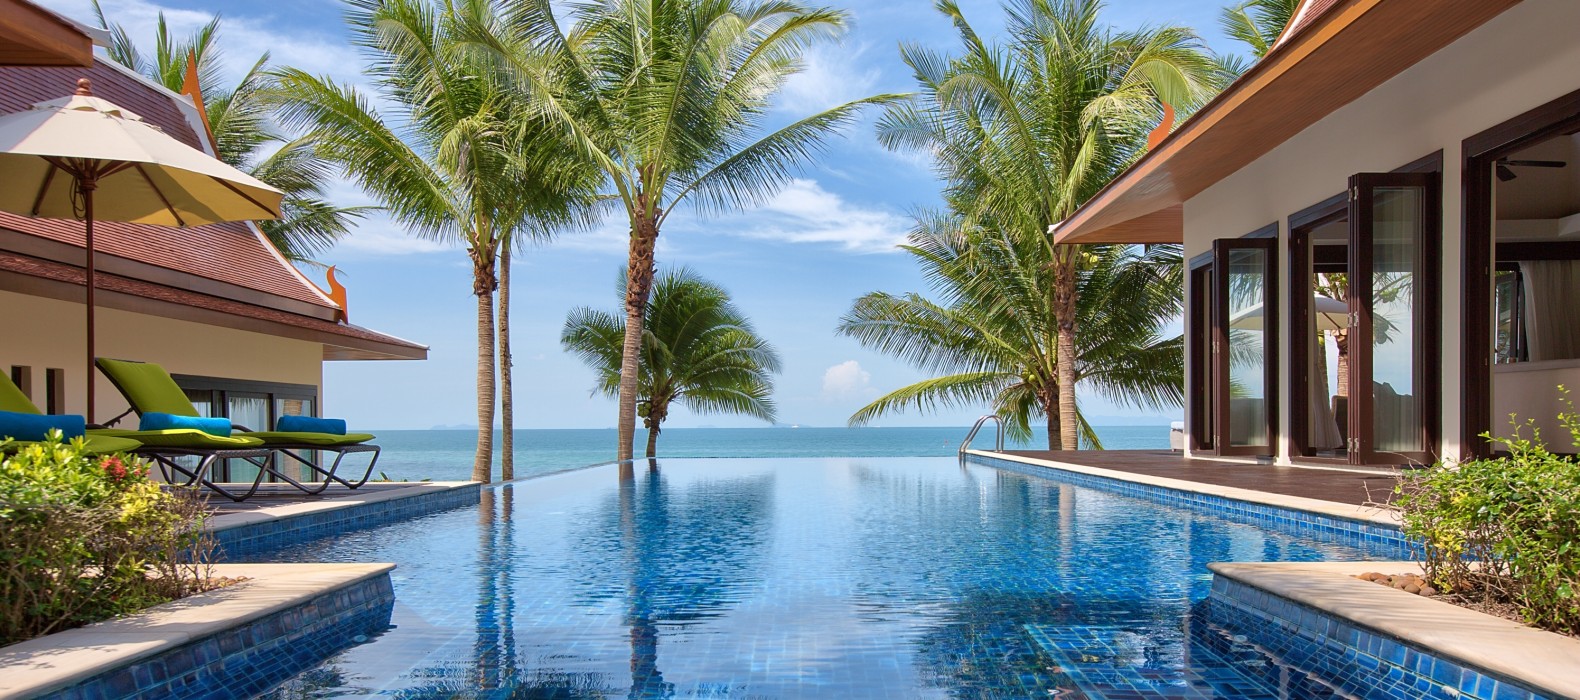 Exterior pool view of Villa Secret Ocean in Koh Samui